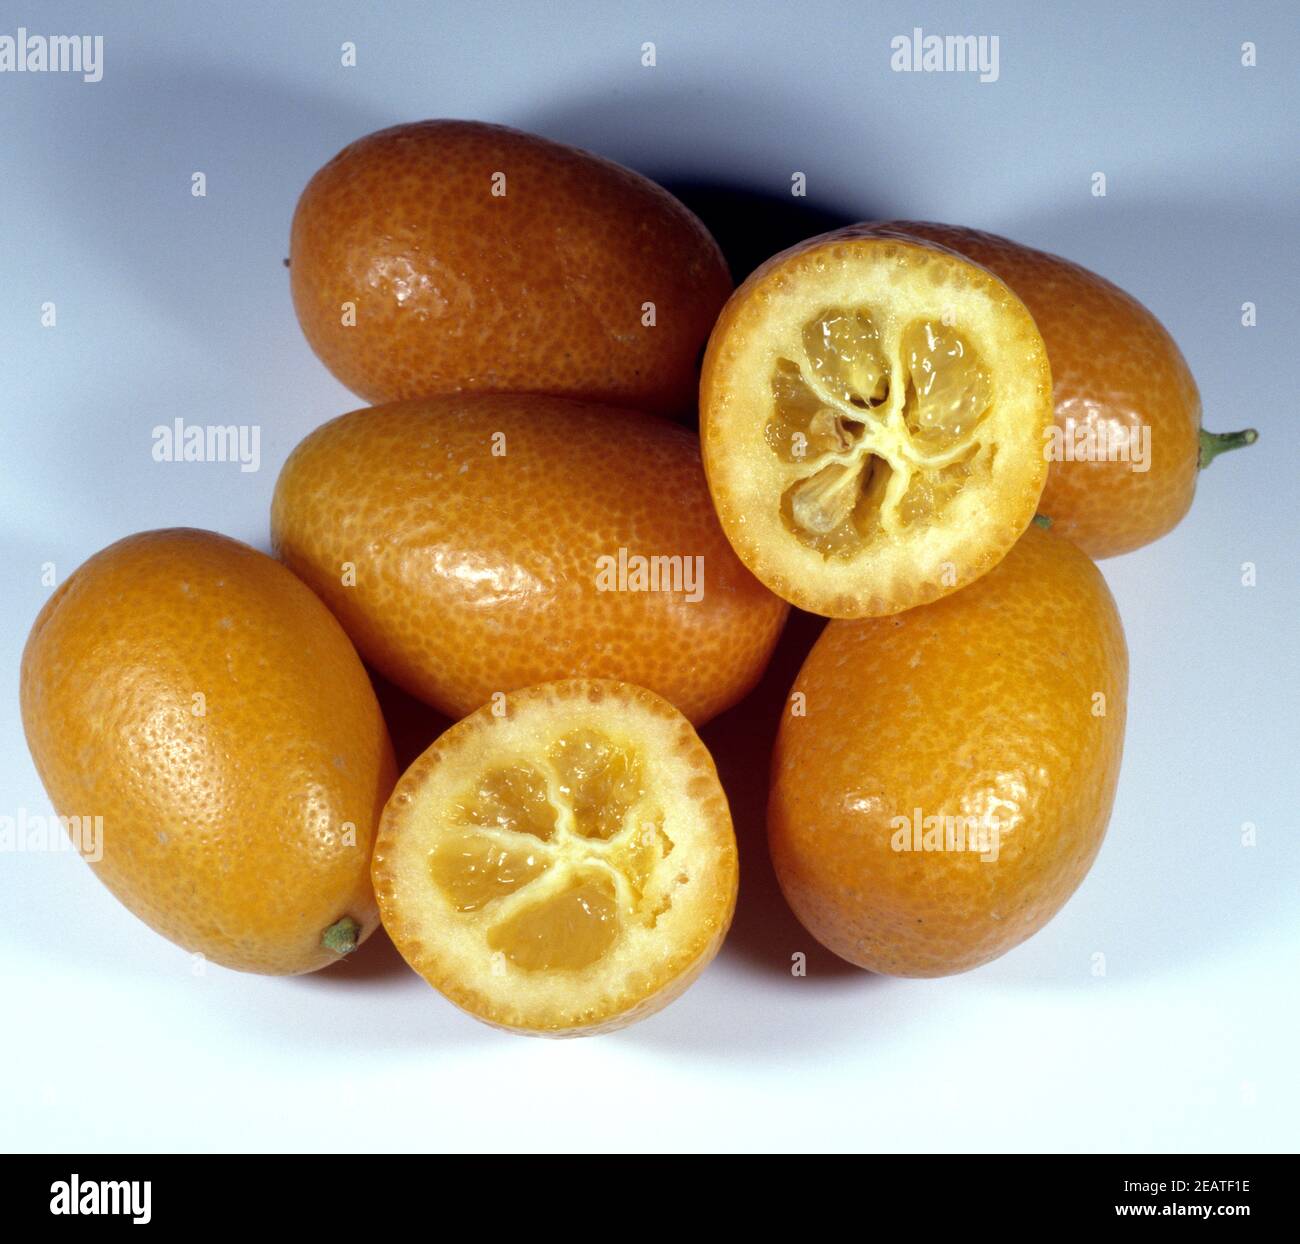 Kumquats, Fortunella spec., Exotische Frucht, exotisch, Suedfrucht, Stock Photo